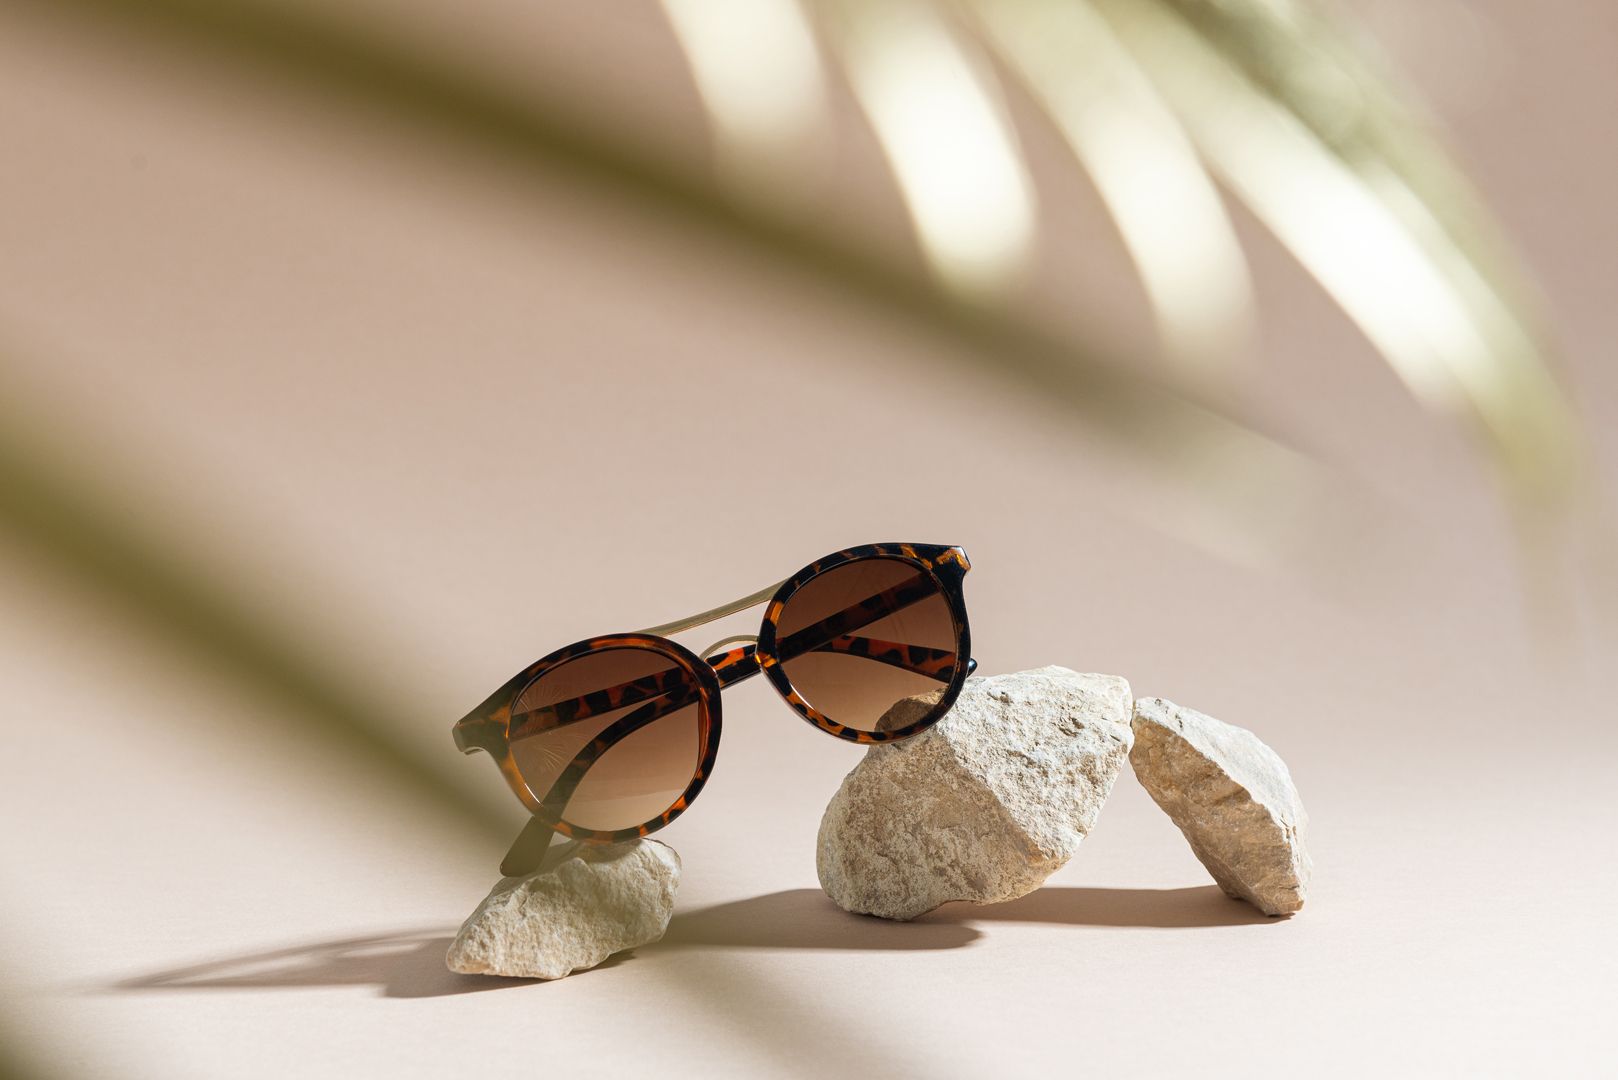 Sonnebrille auf einem Stein